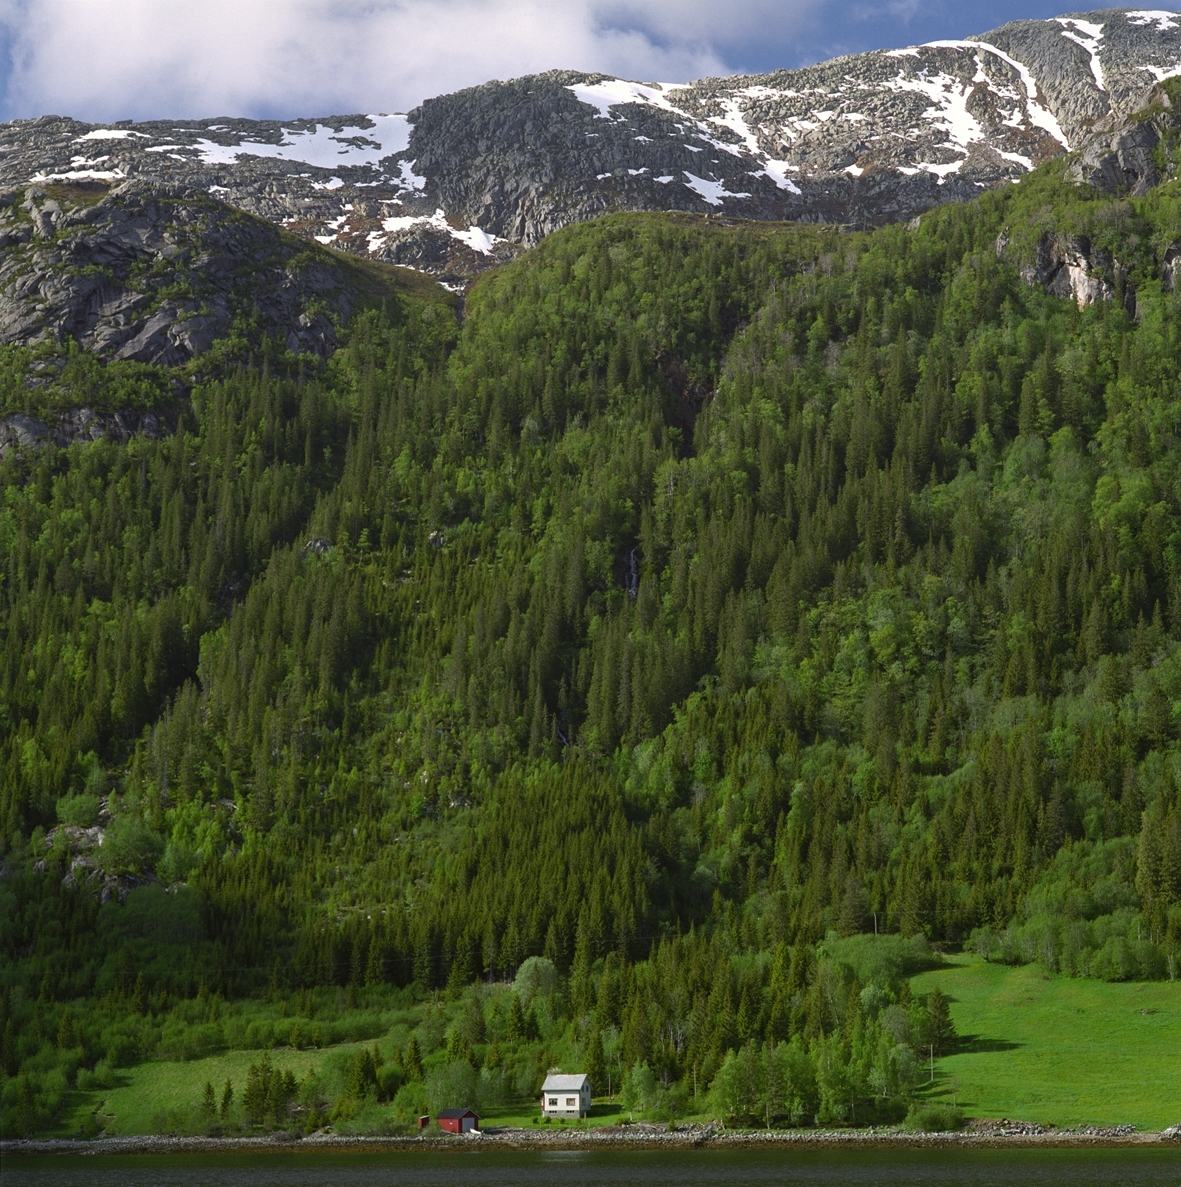 Motivet er av en grønn fjellside med et lite horisontalt element av fjord/innsjø nederst i forgrunnen, lettsnødekket fjell i bakgrunnen, og et lite horisontalt element av himmelparti øverst i bakgrunnen. Nederst, langs vannkanten sentrert i motivet er et lite rødt naust og et hvitt hus. Fjellsiden er dekket av grønn trevekst og vegetasjon.